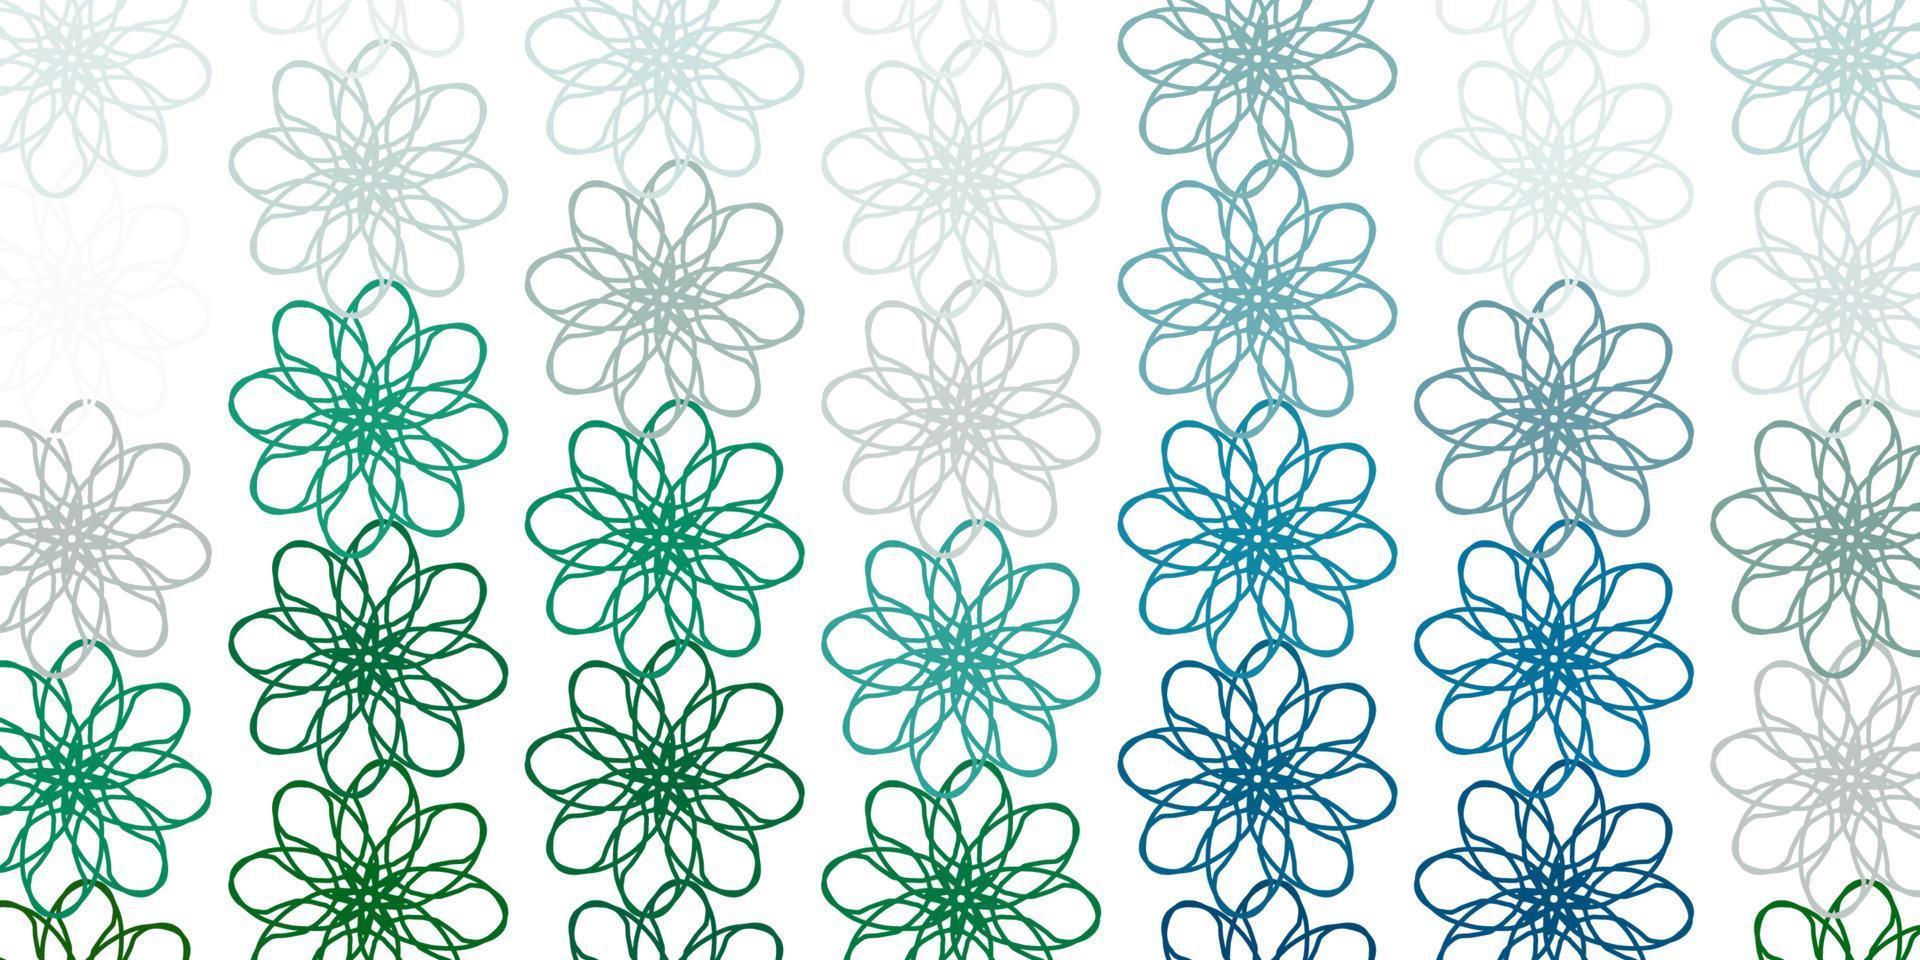 struttura di doodle di vettore verde chiaro con fiori.